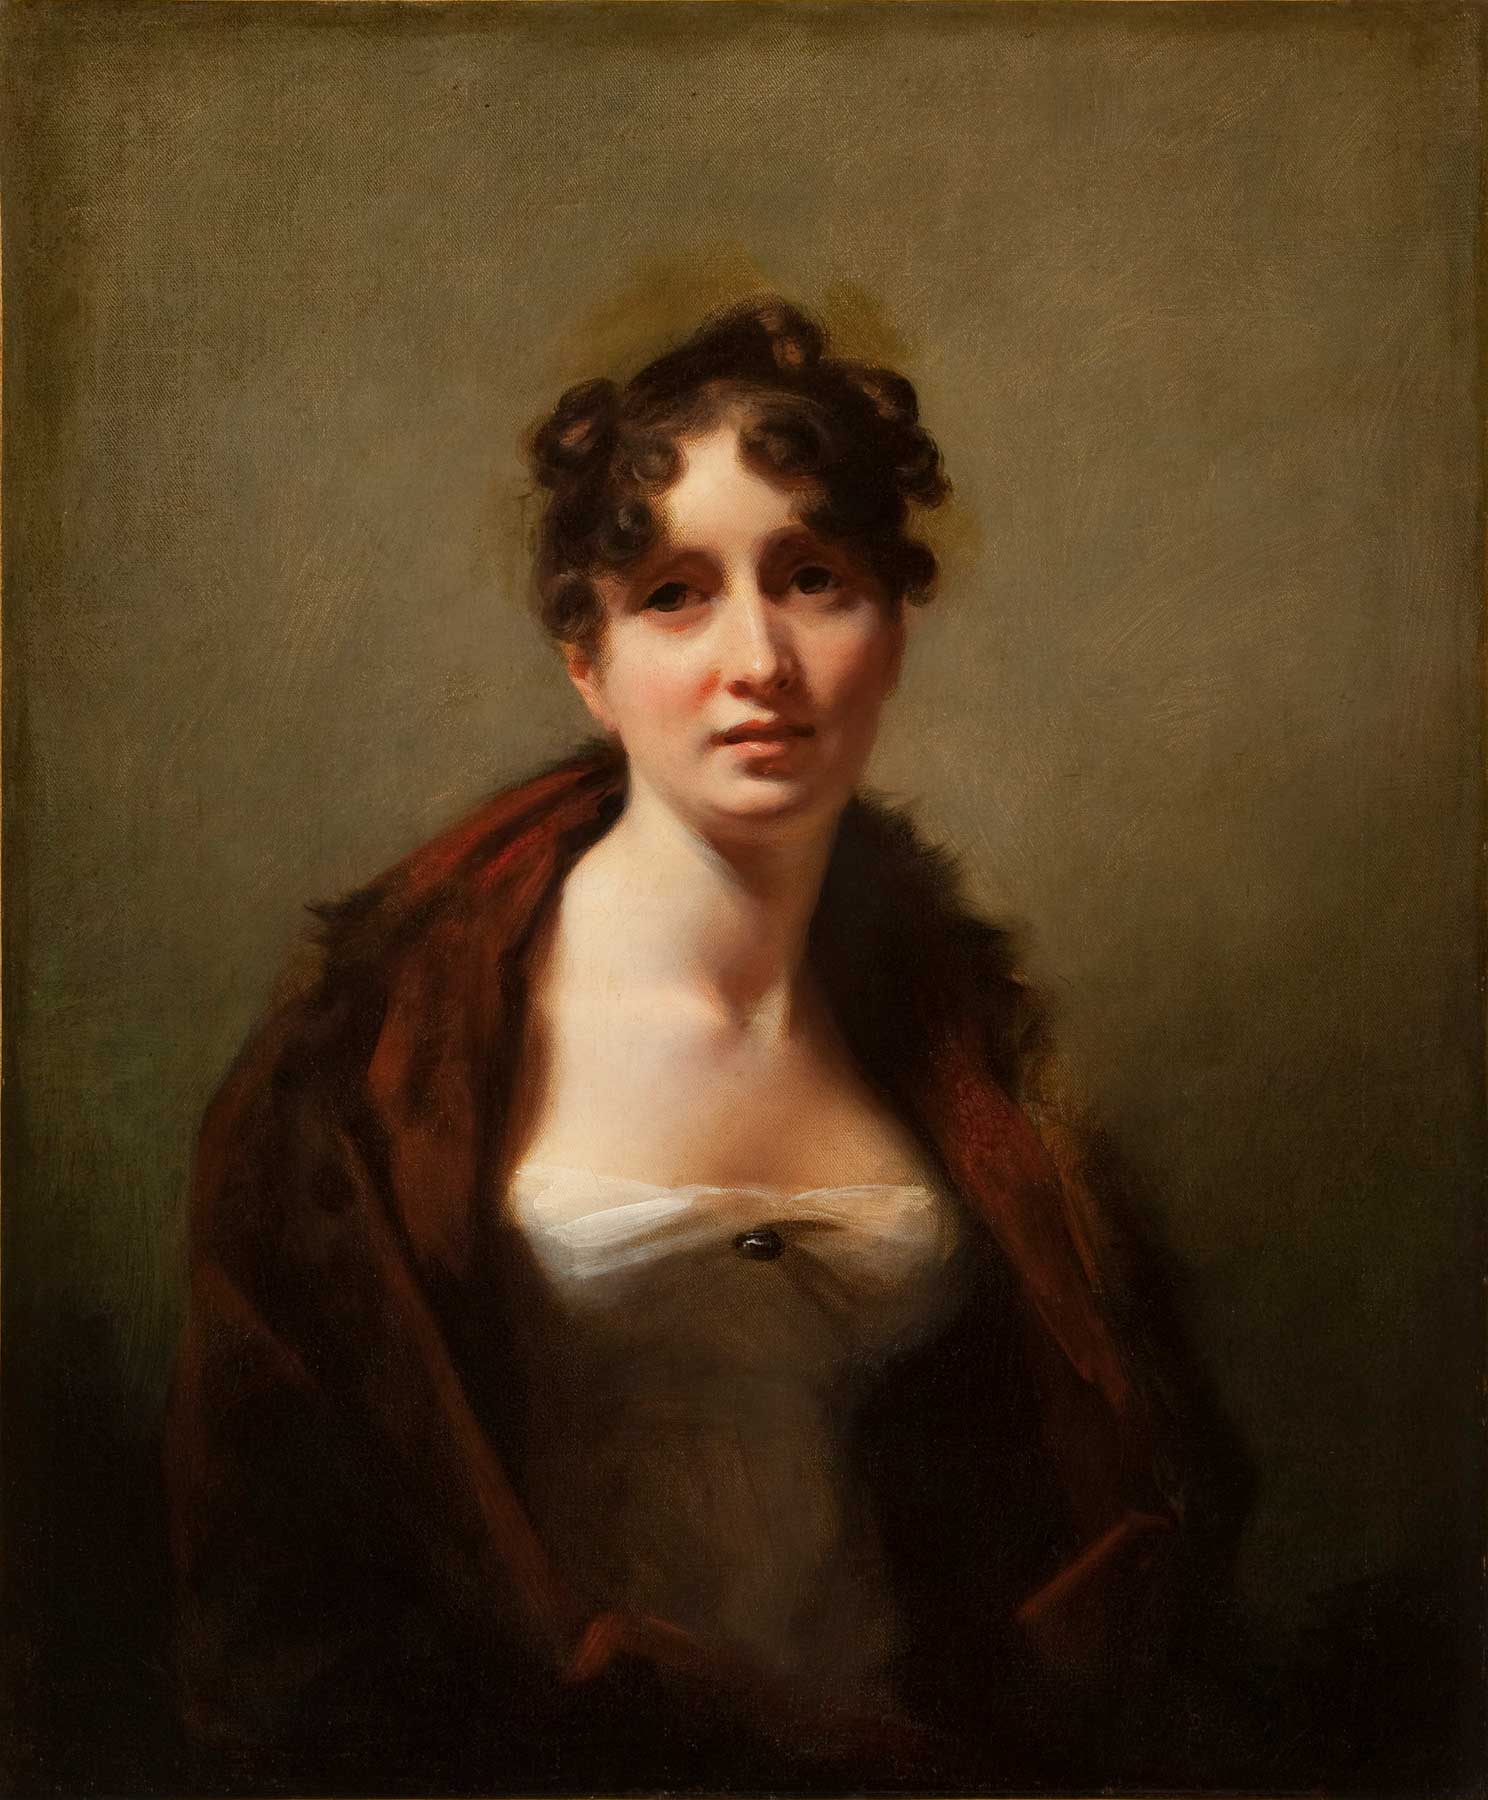 Henry Raeburn (Scottish, 1756–1823), "Jane Fraser Tytler" (died 1861) , about 1810, oil on canvas. Taft Museum of Art, 1931.424